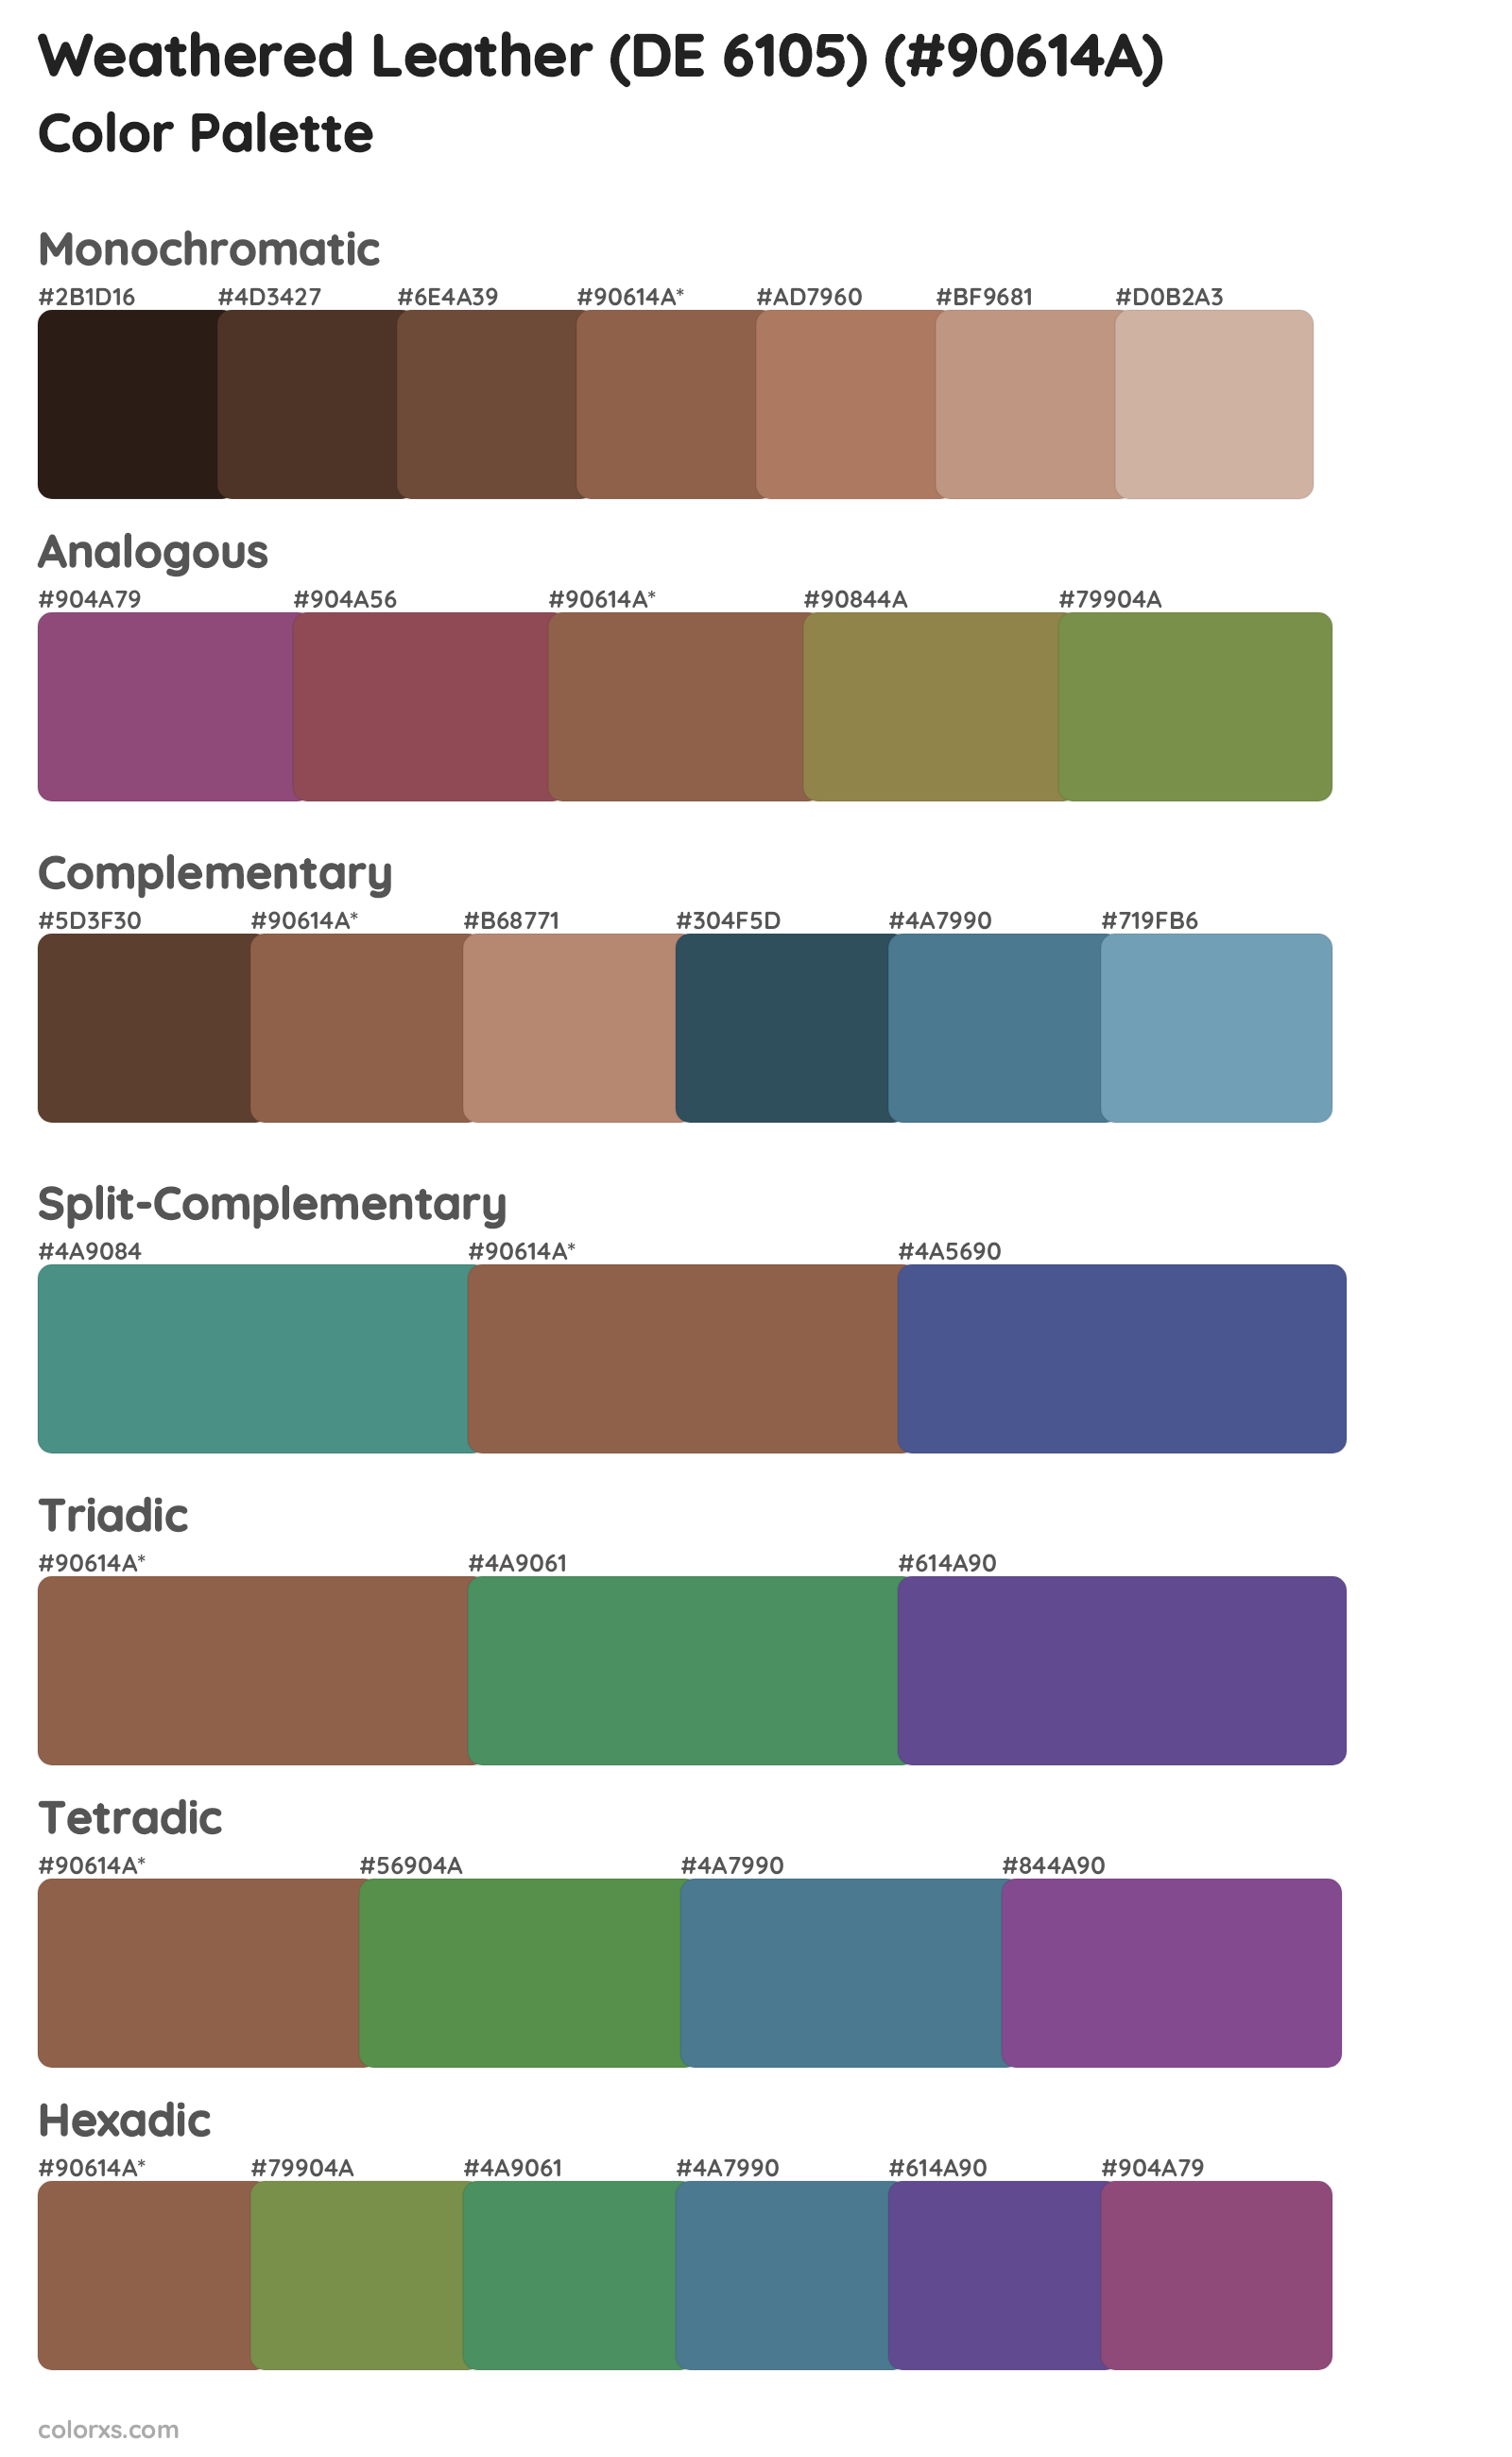 Weathered Leather (DE 6105) Color Scheme Palettes